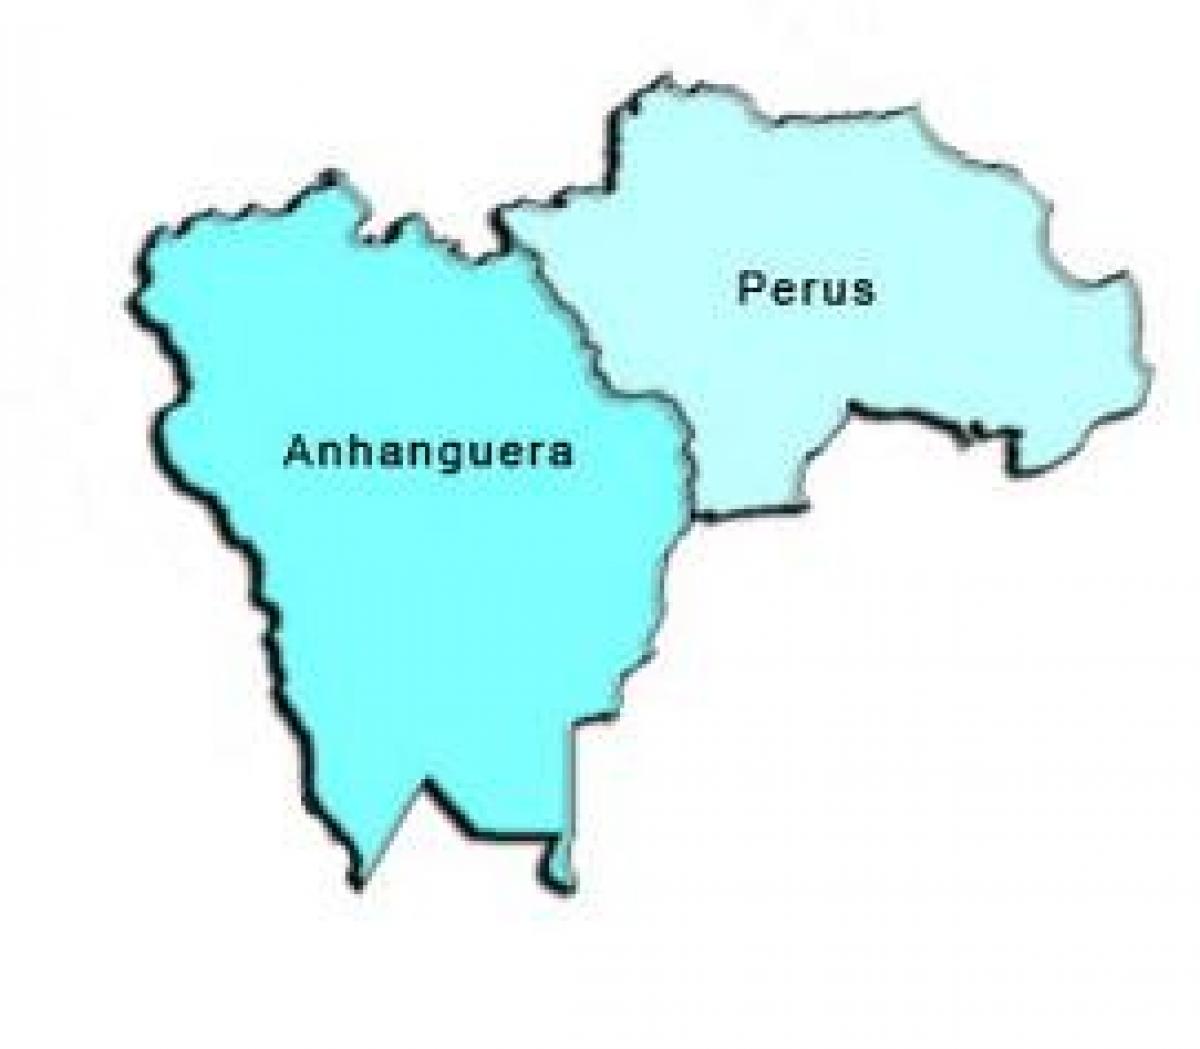 Mapa de Perú sub-prefectura